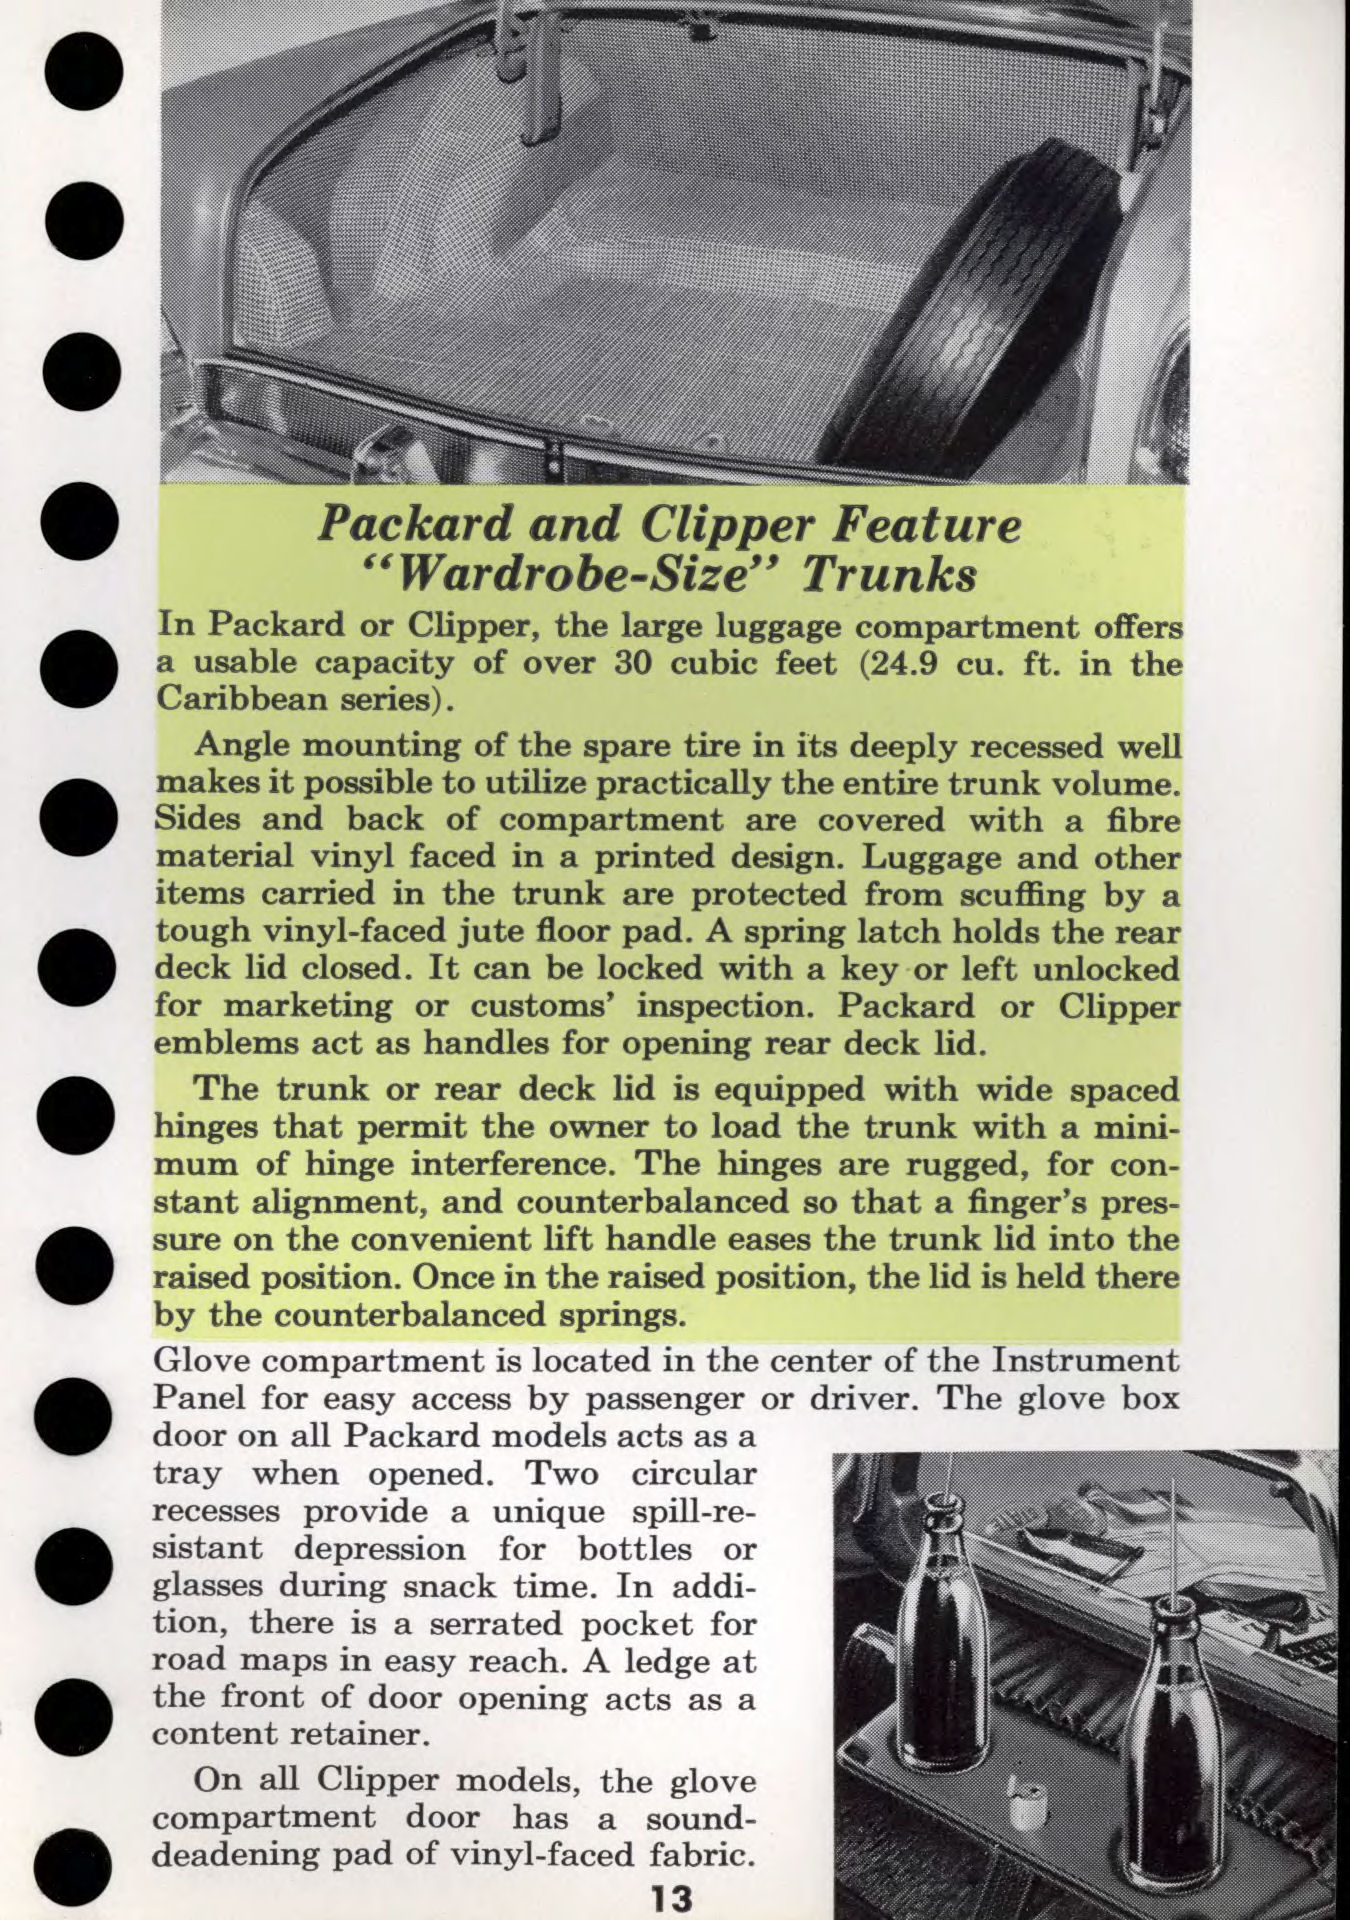 1956 Packard Data Book-g13